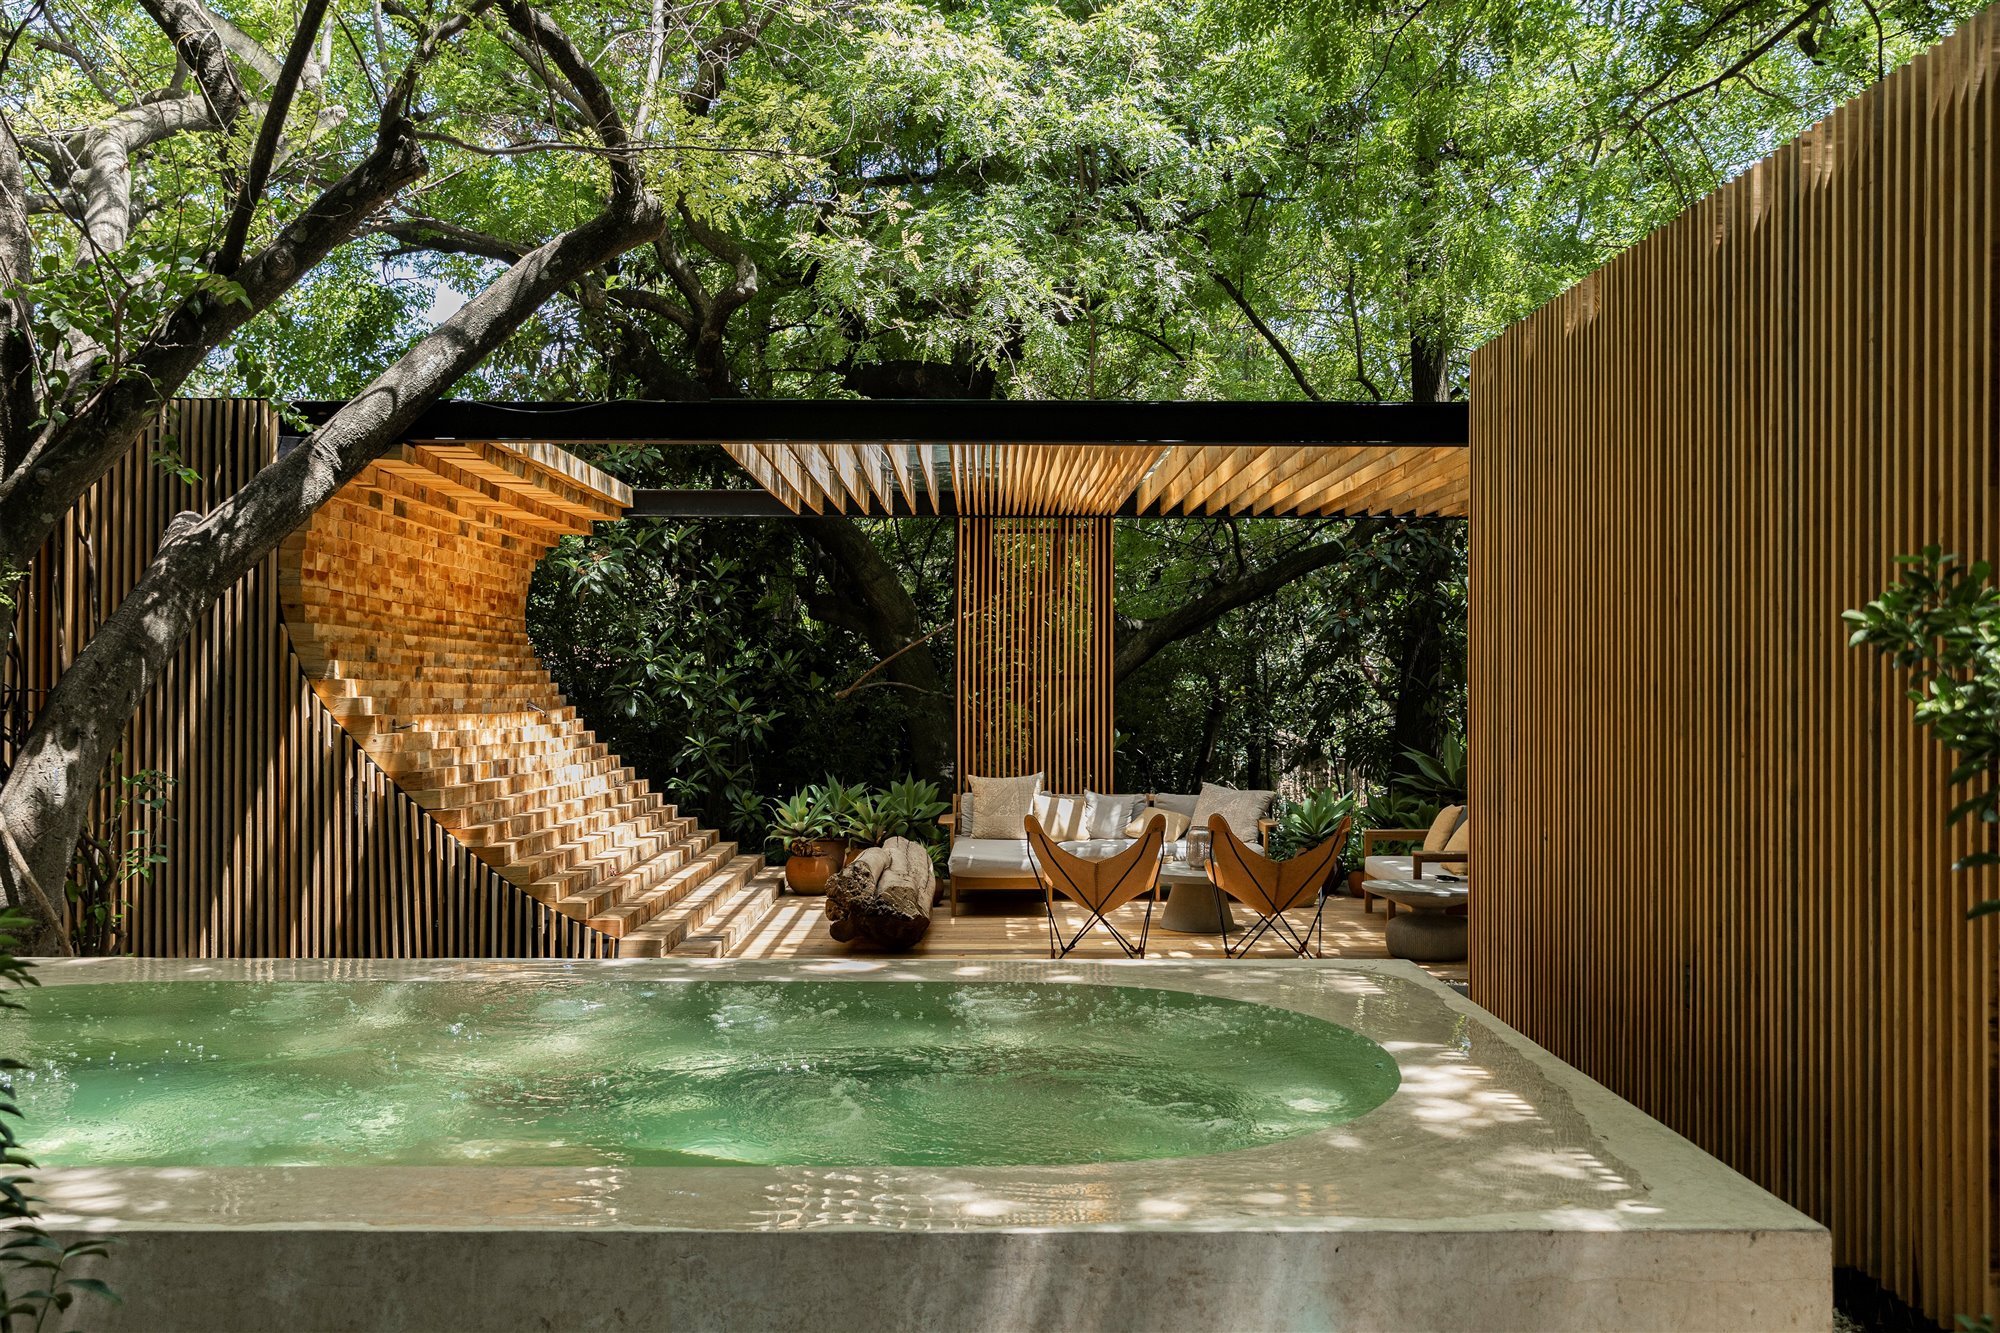 Casa moderna en Mexico rodeada de vegetacion en la selva piscina con tumbonas